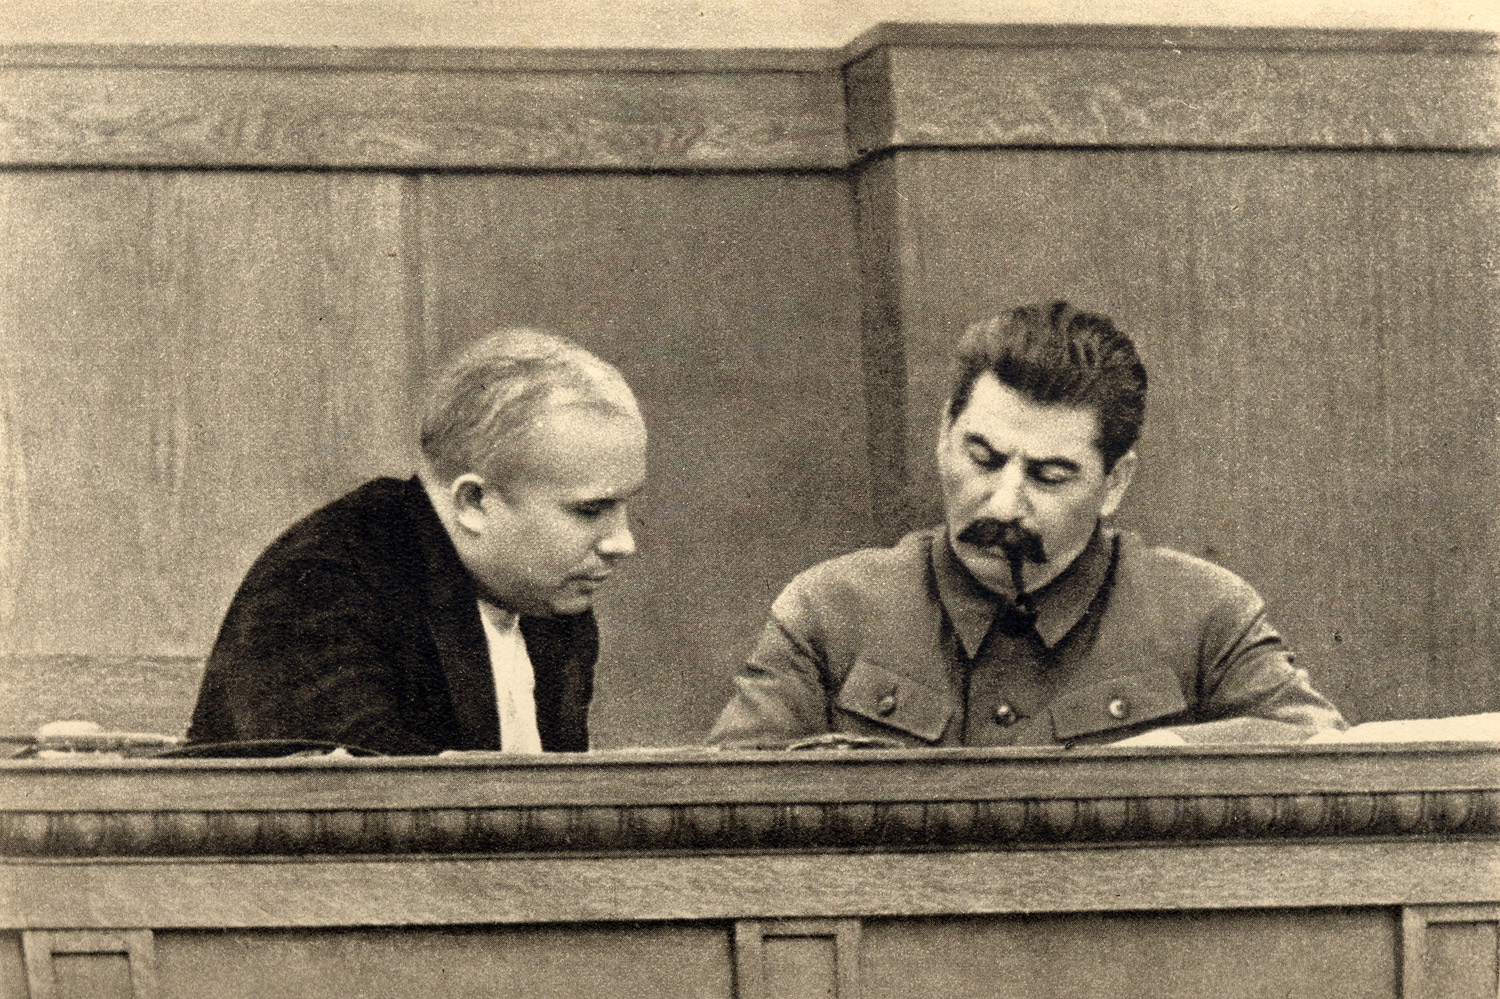 Сталин и Хрущев в президиуме сессии ЦИК СССР, январь 1936 года.